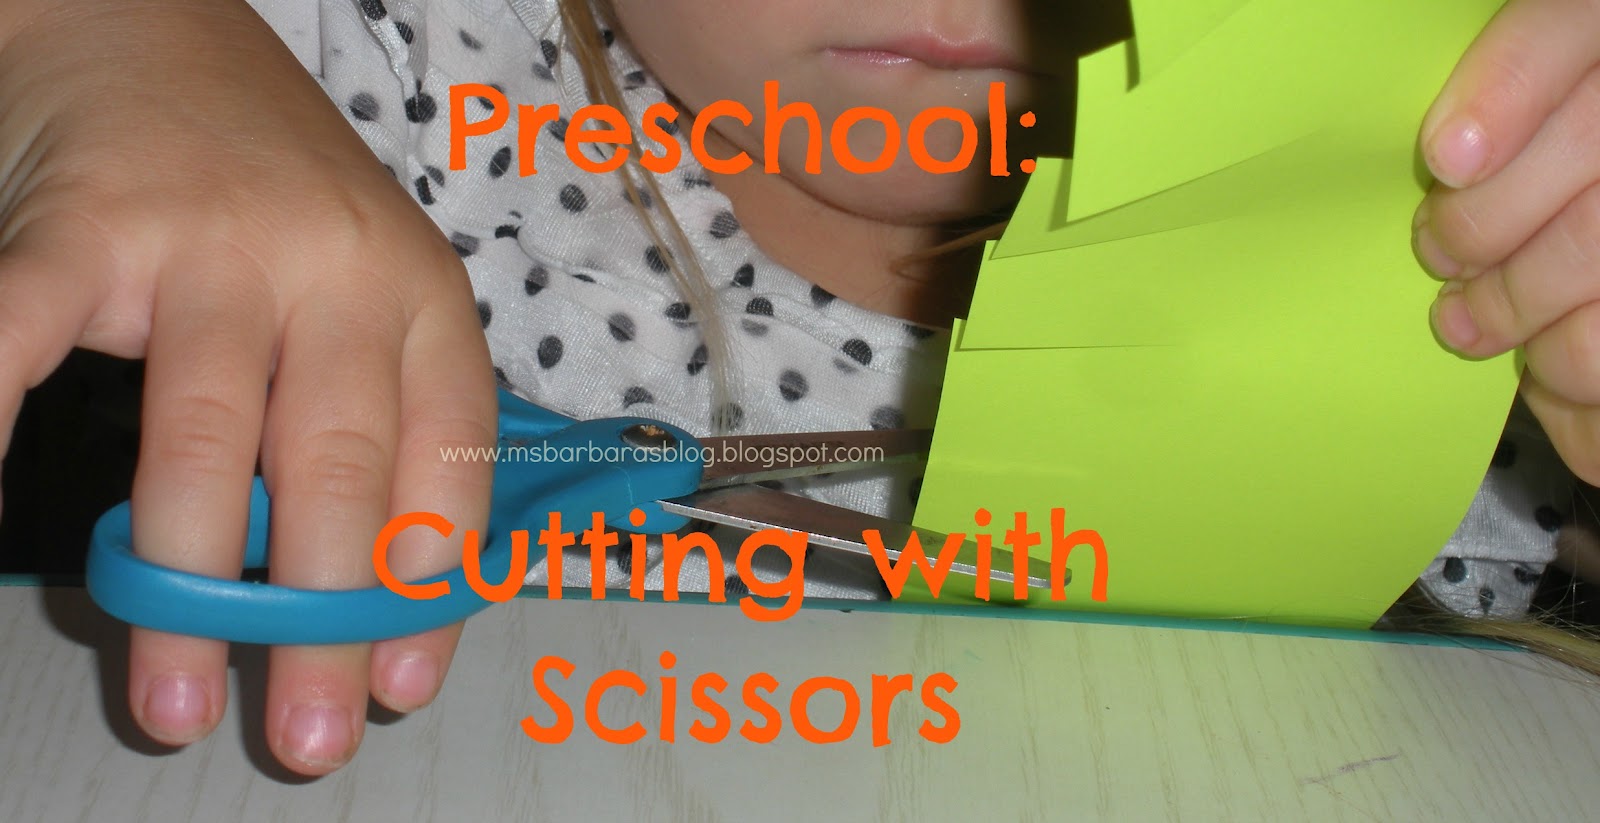 5 Scissor Skills Activities for Toddlers and Preschoolers - Happy Hooligans